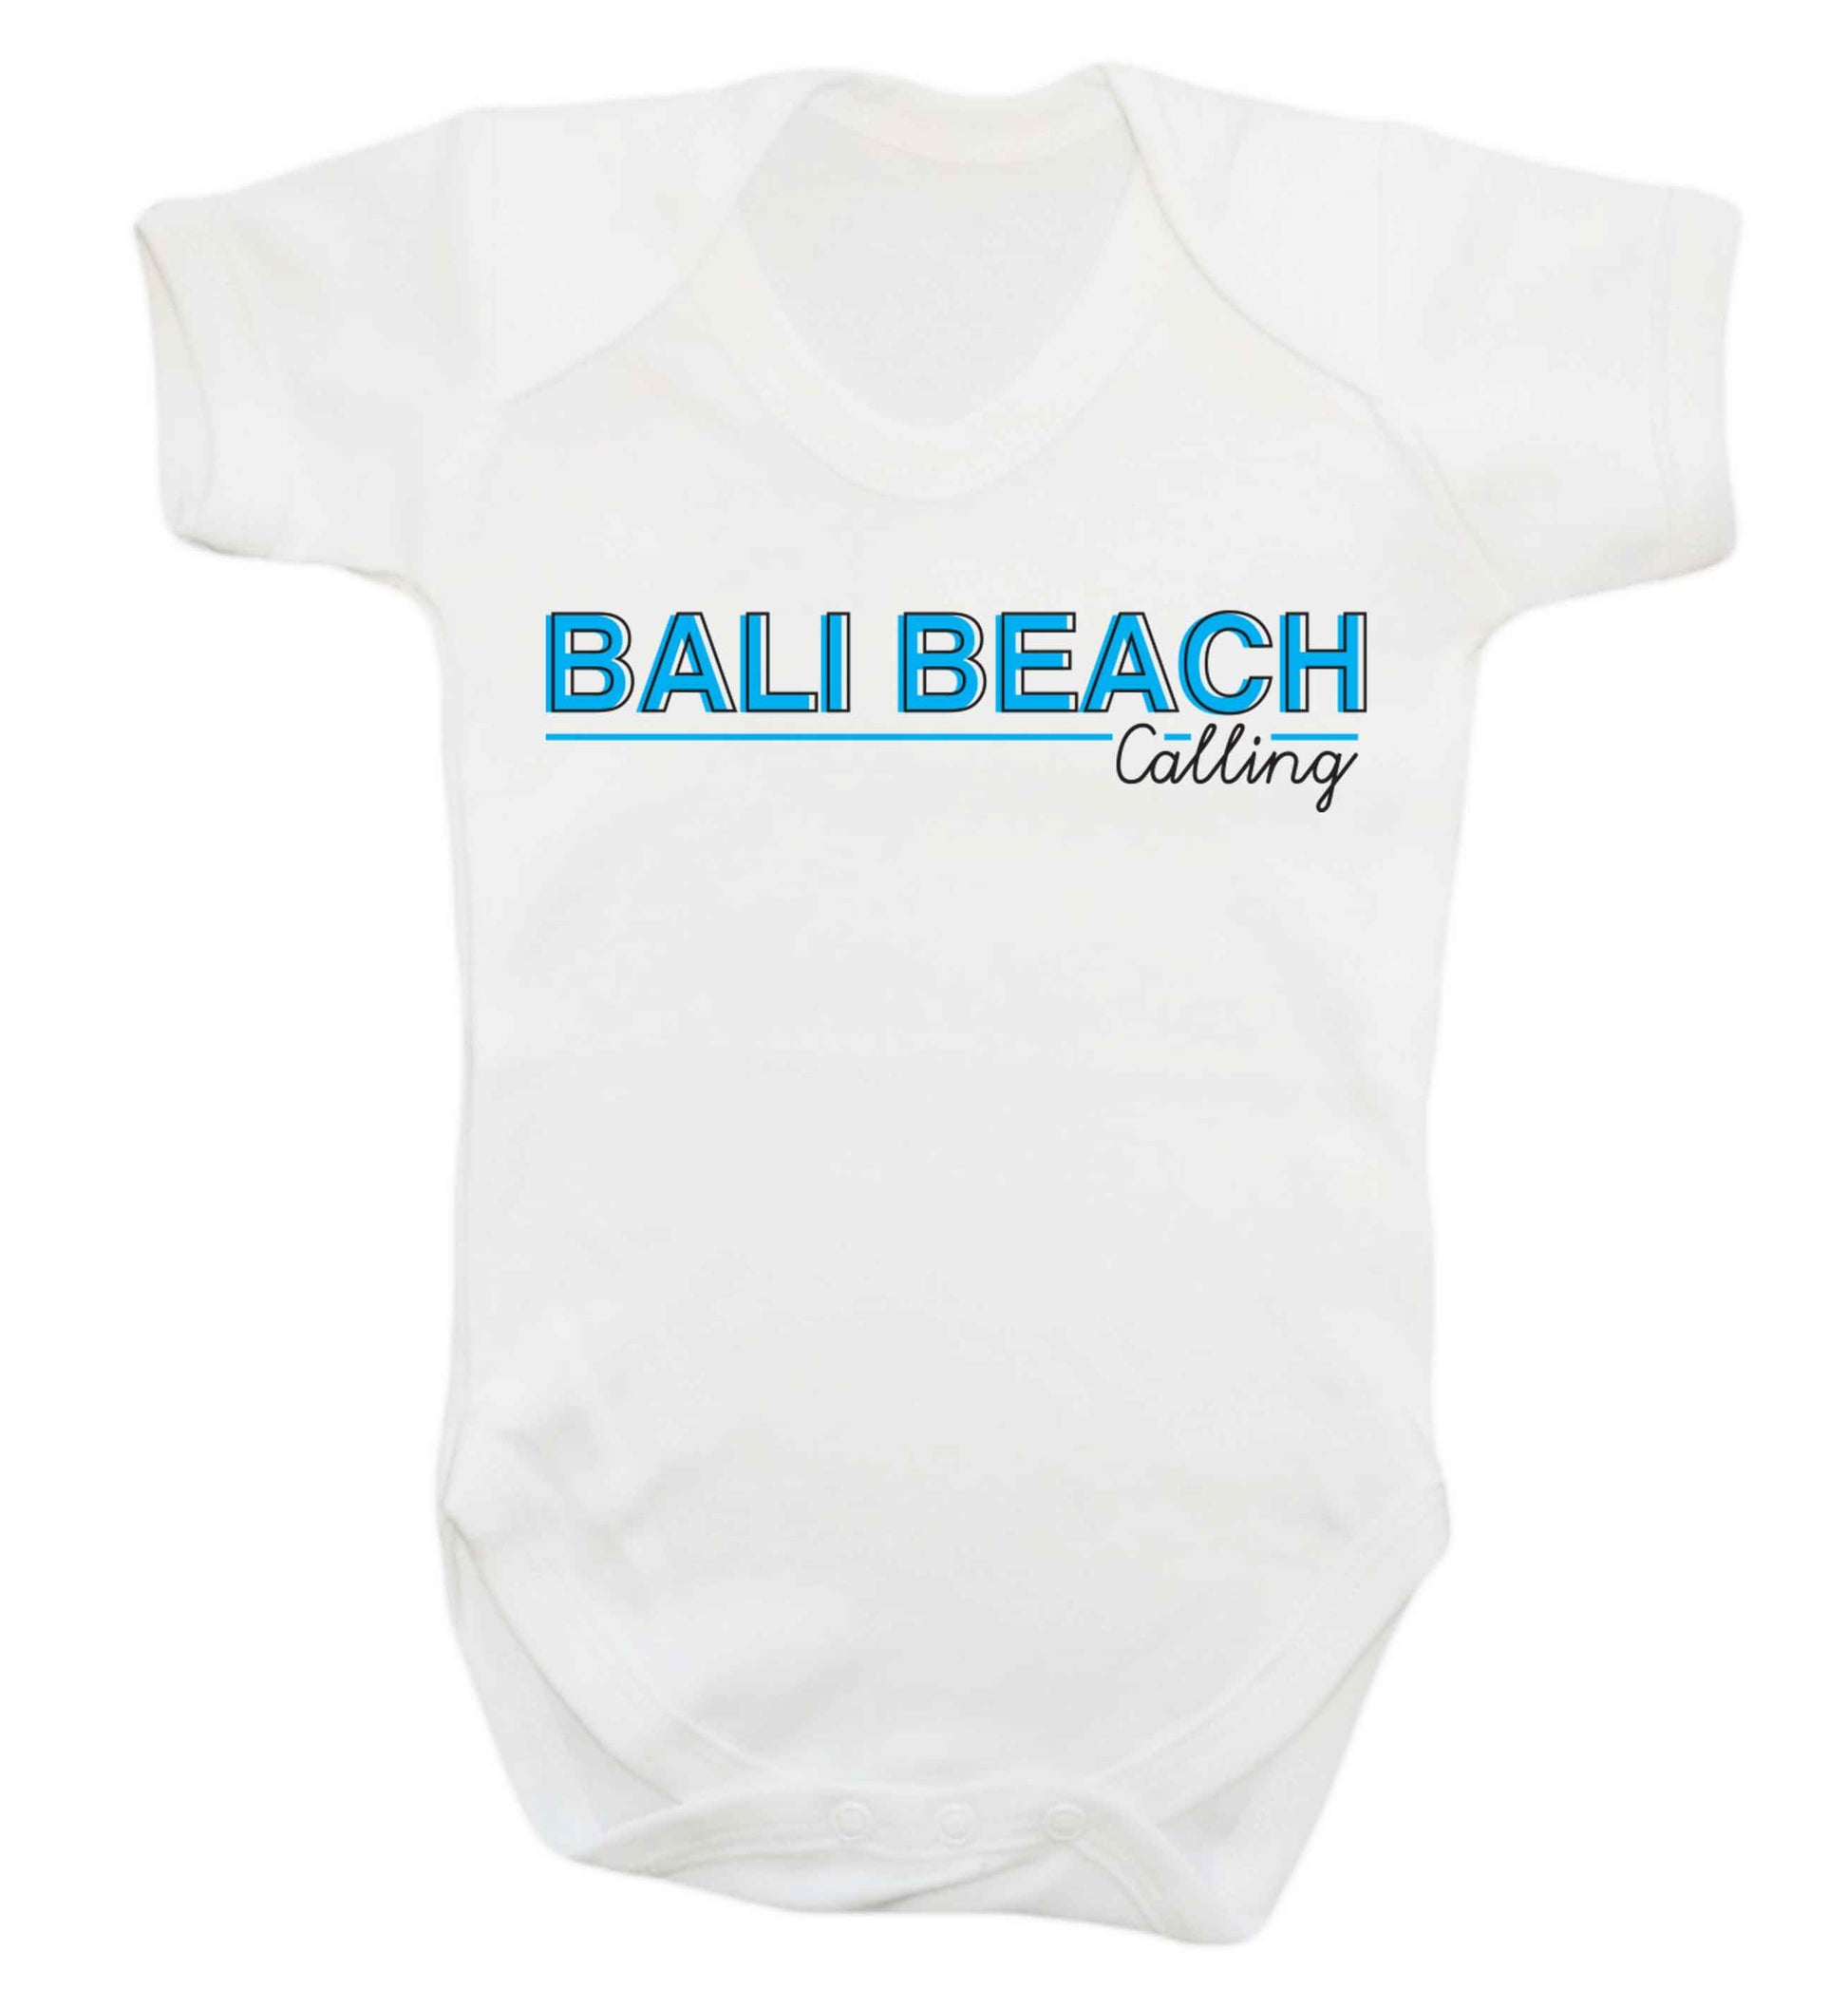 Bali beach calling Baby Vest white 18-24 months